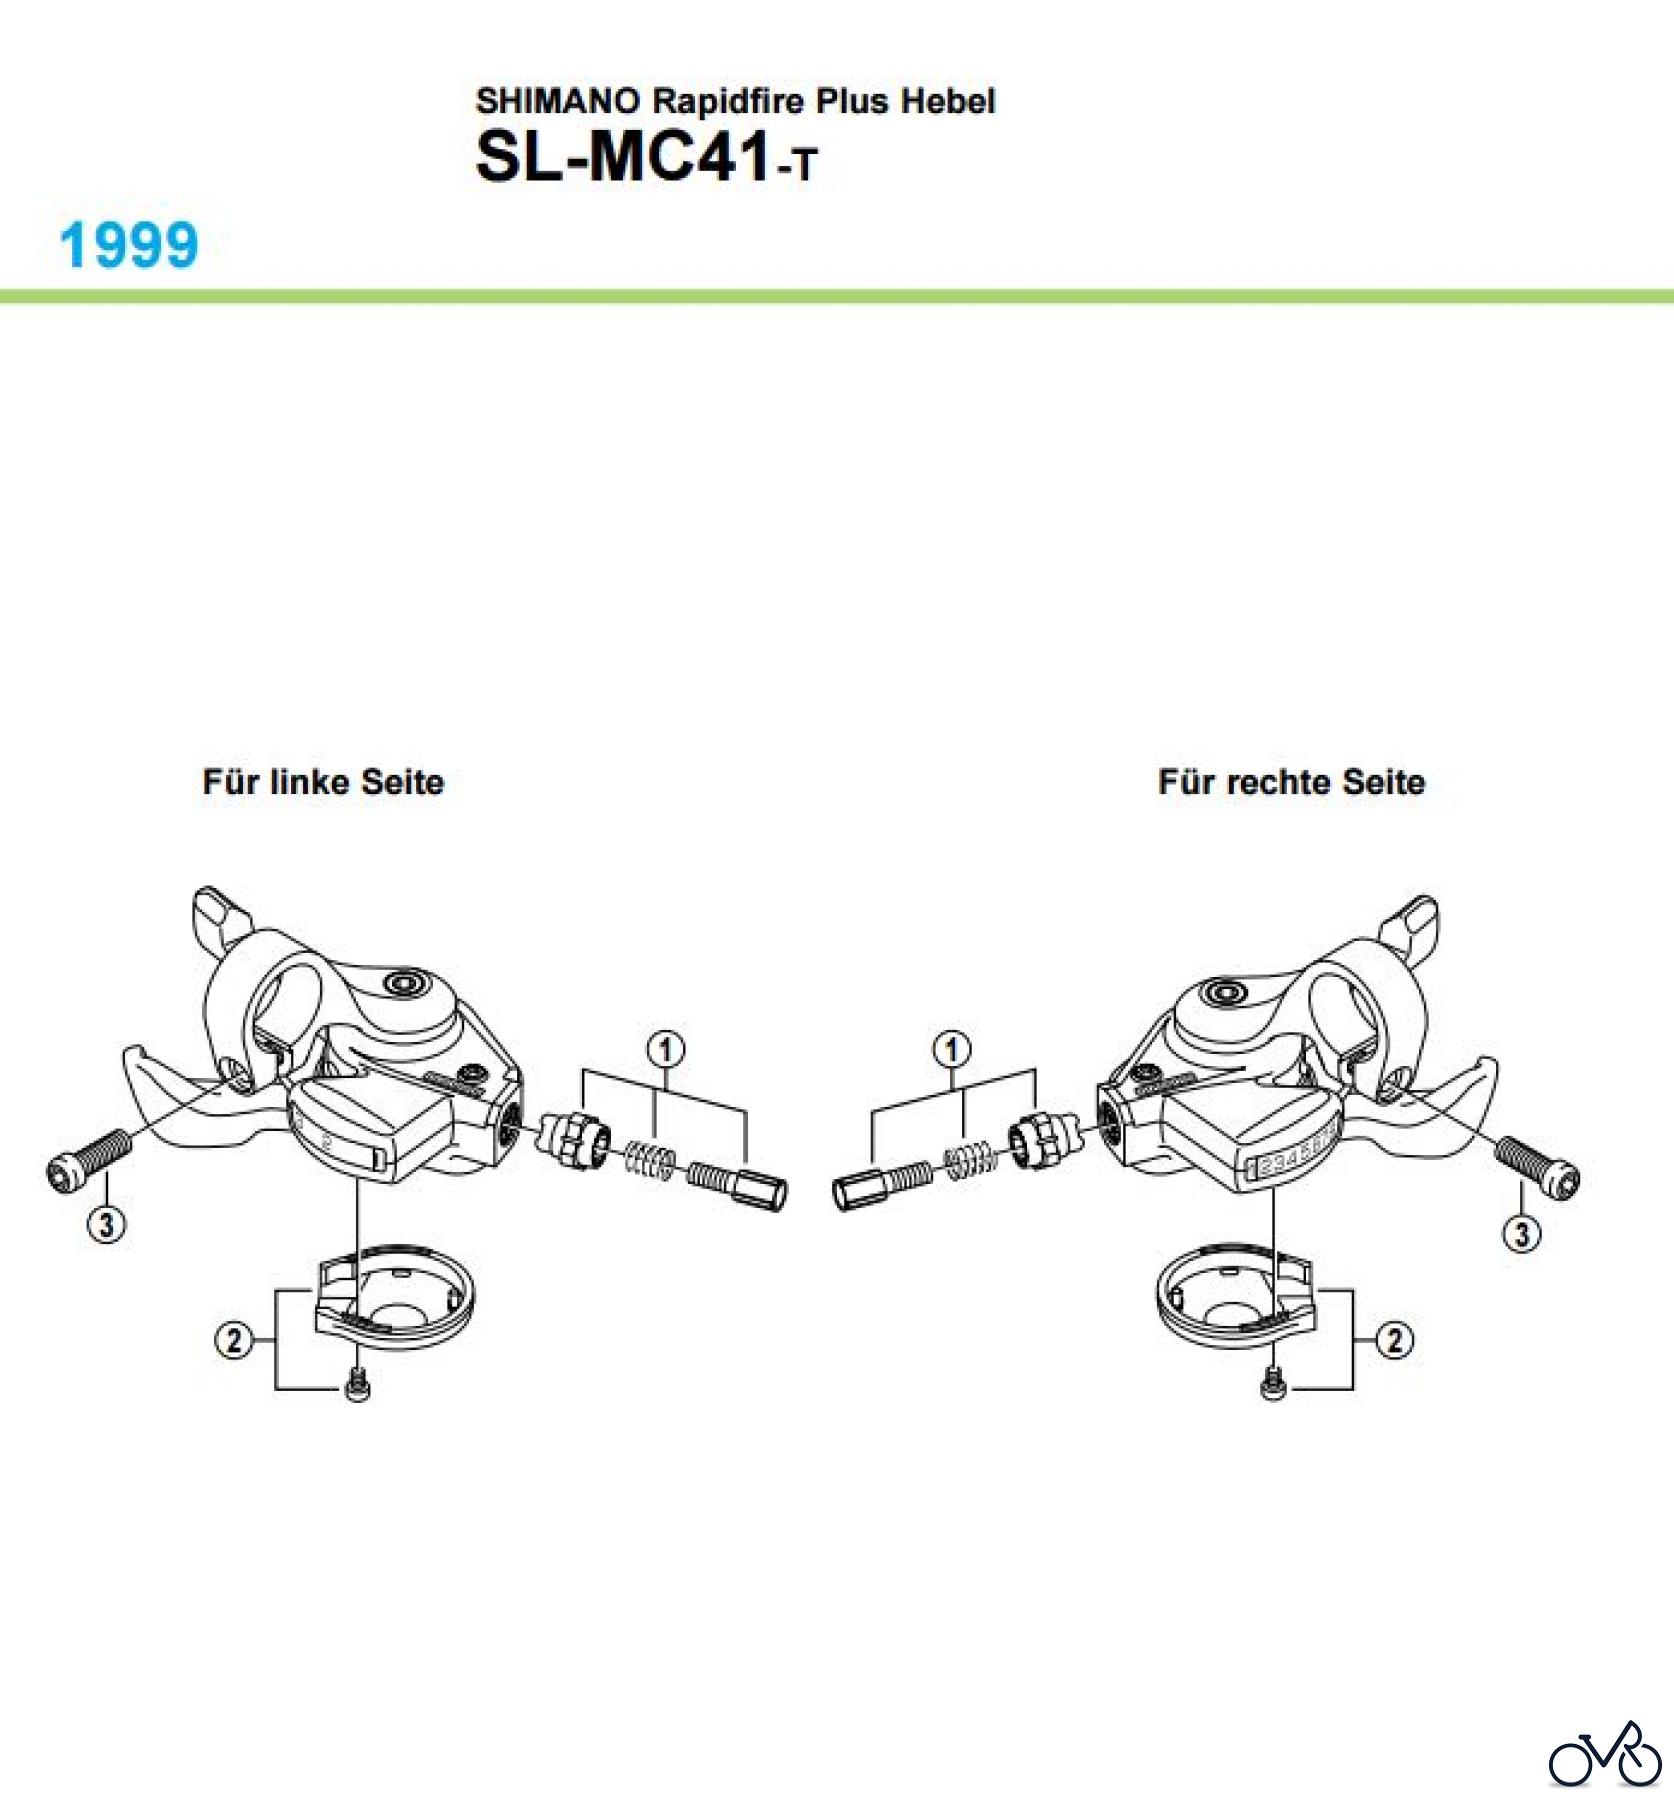  Shimano SL Shift Lever - Schalthebel SL-MC41 -1819 SHIMANO Rapidfire Plus Hebel